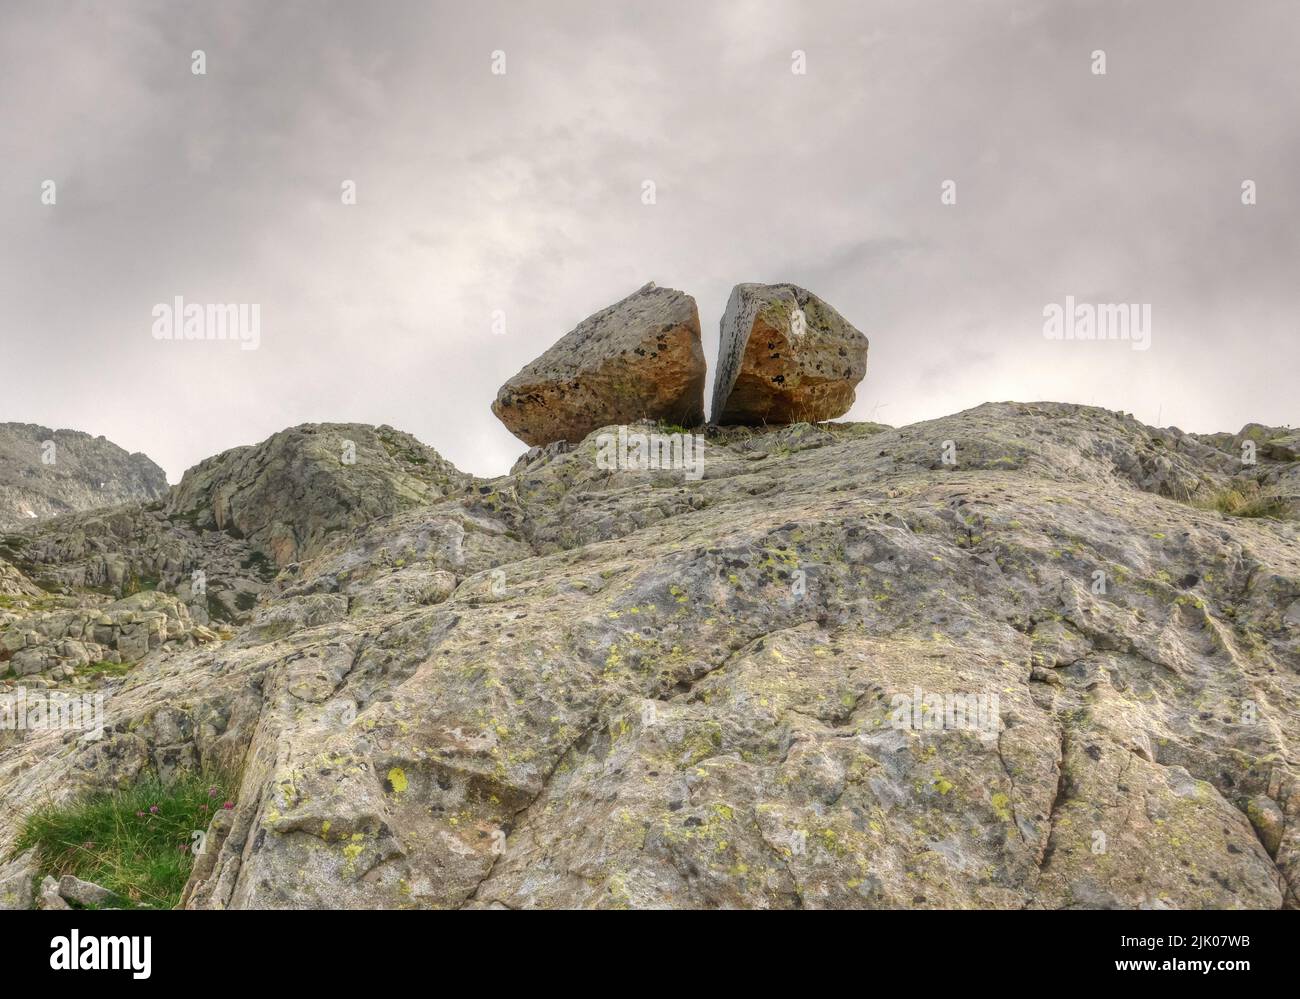 Piedra partida sobre roca, remanente de un glaciar desaparecido Foto de stock